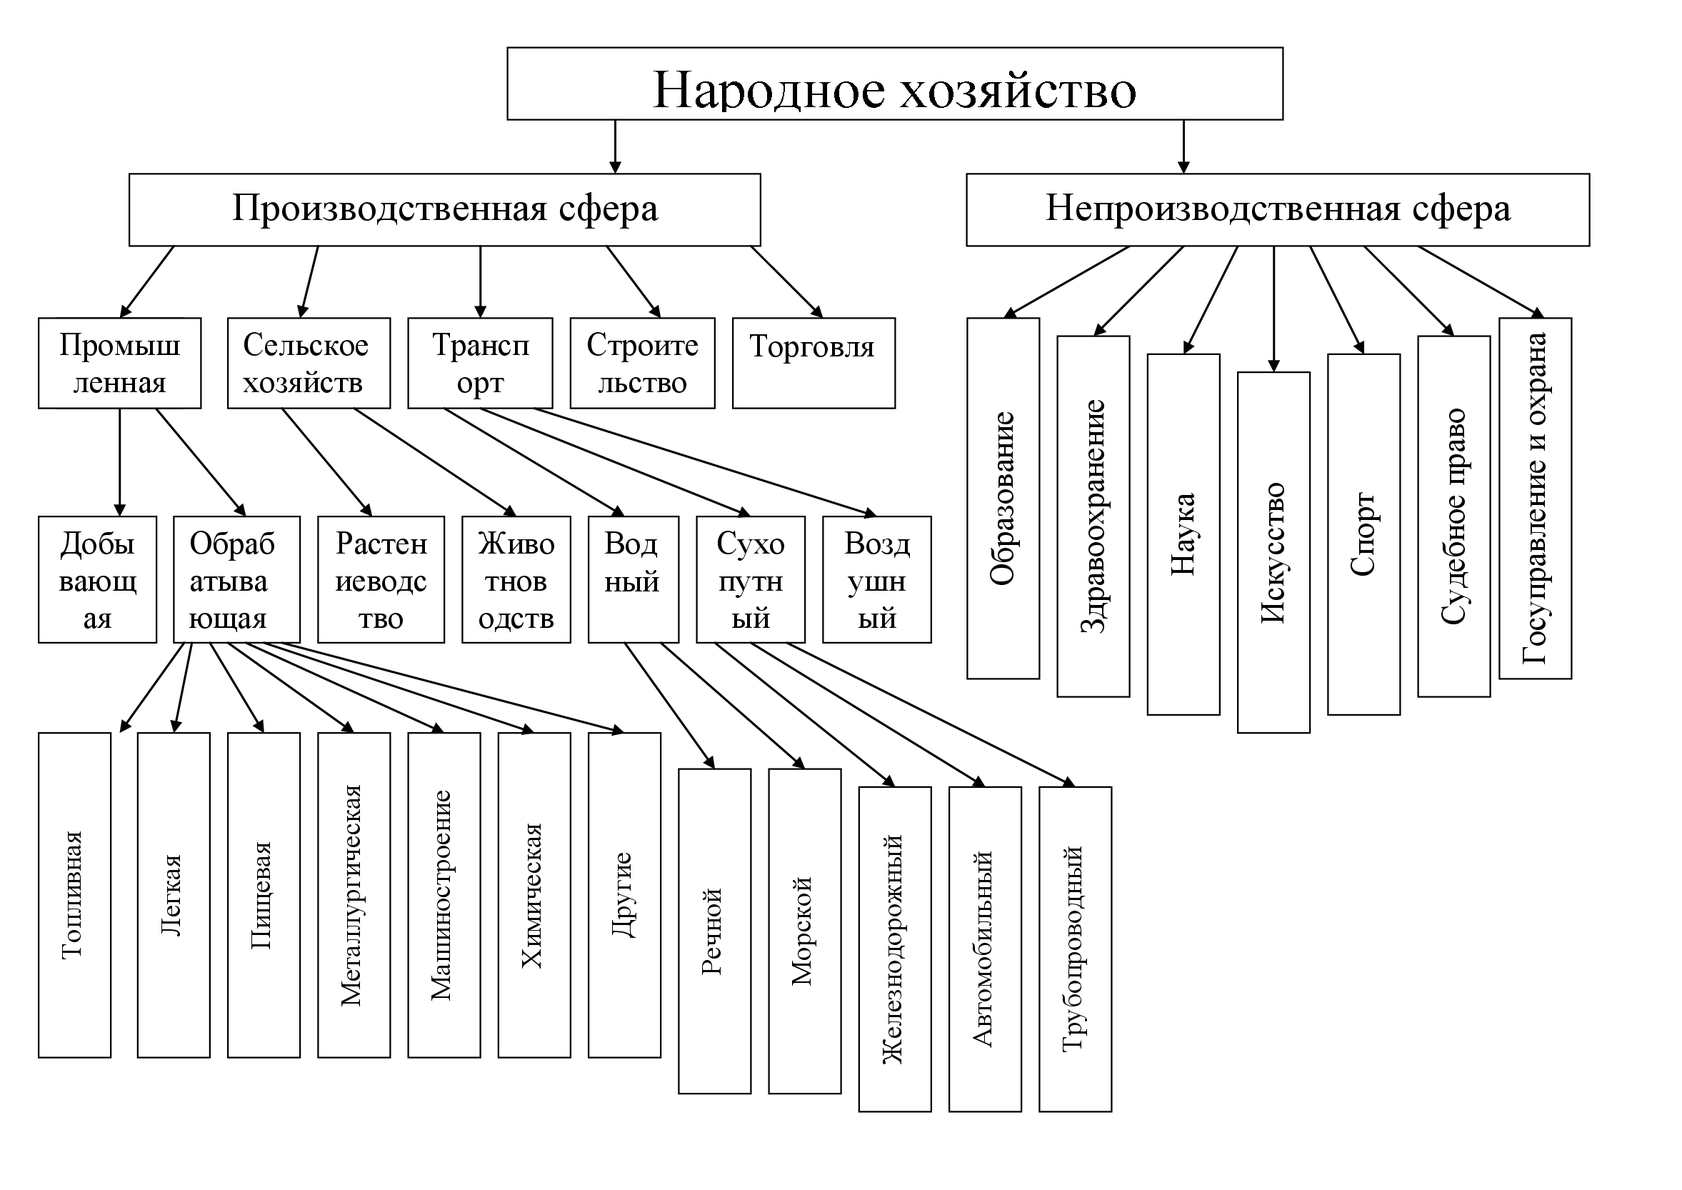 Отраслевая структура животноводства в российской федерации